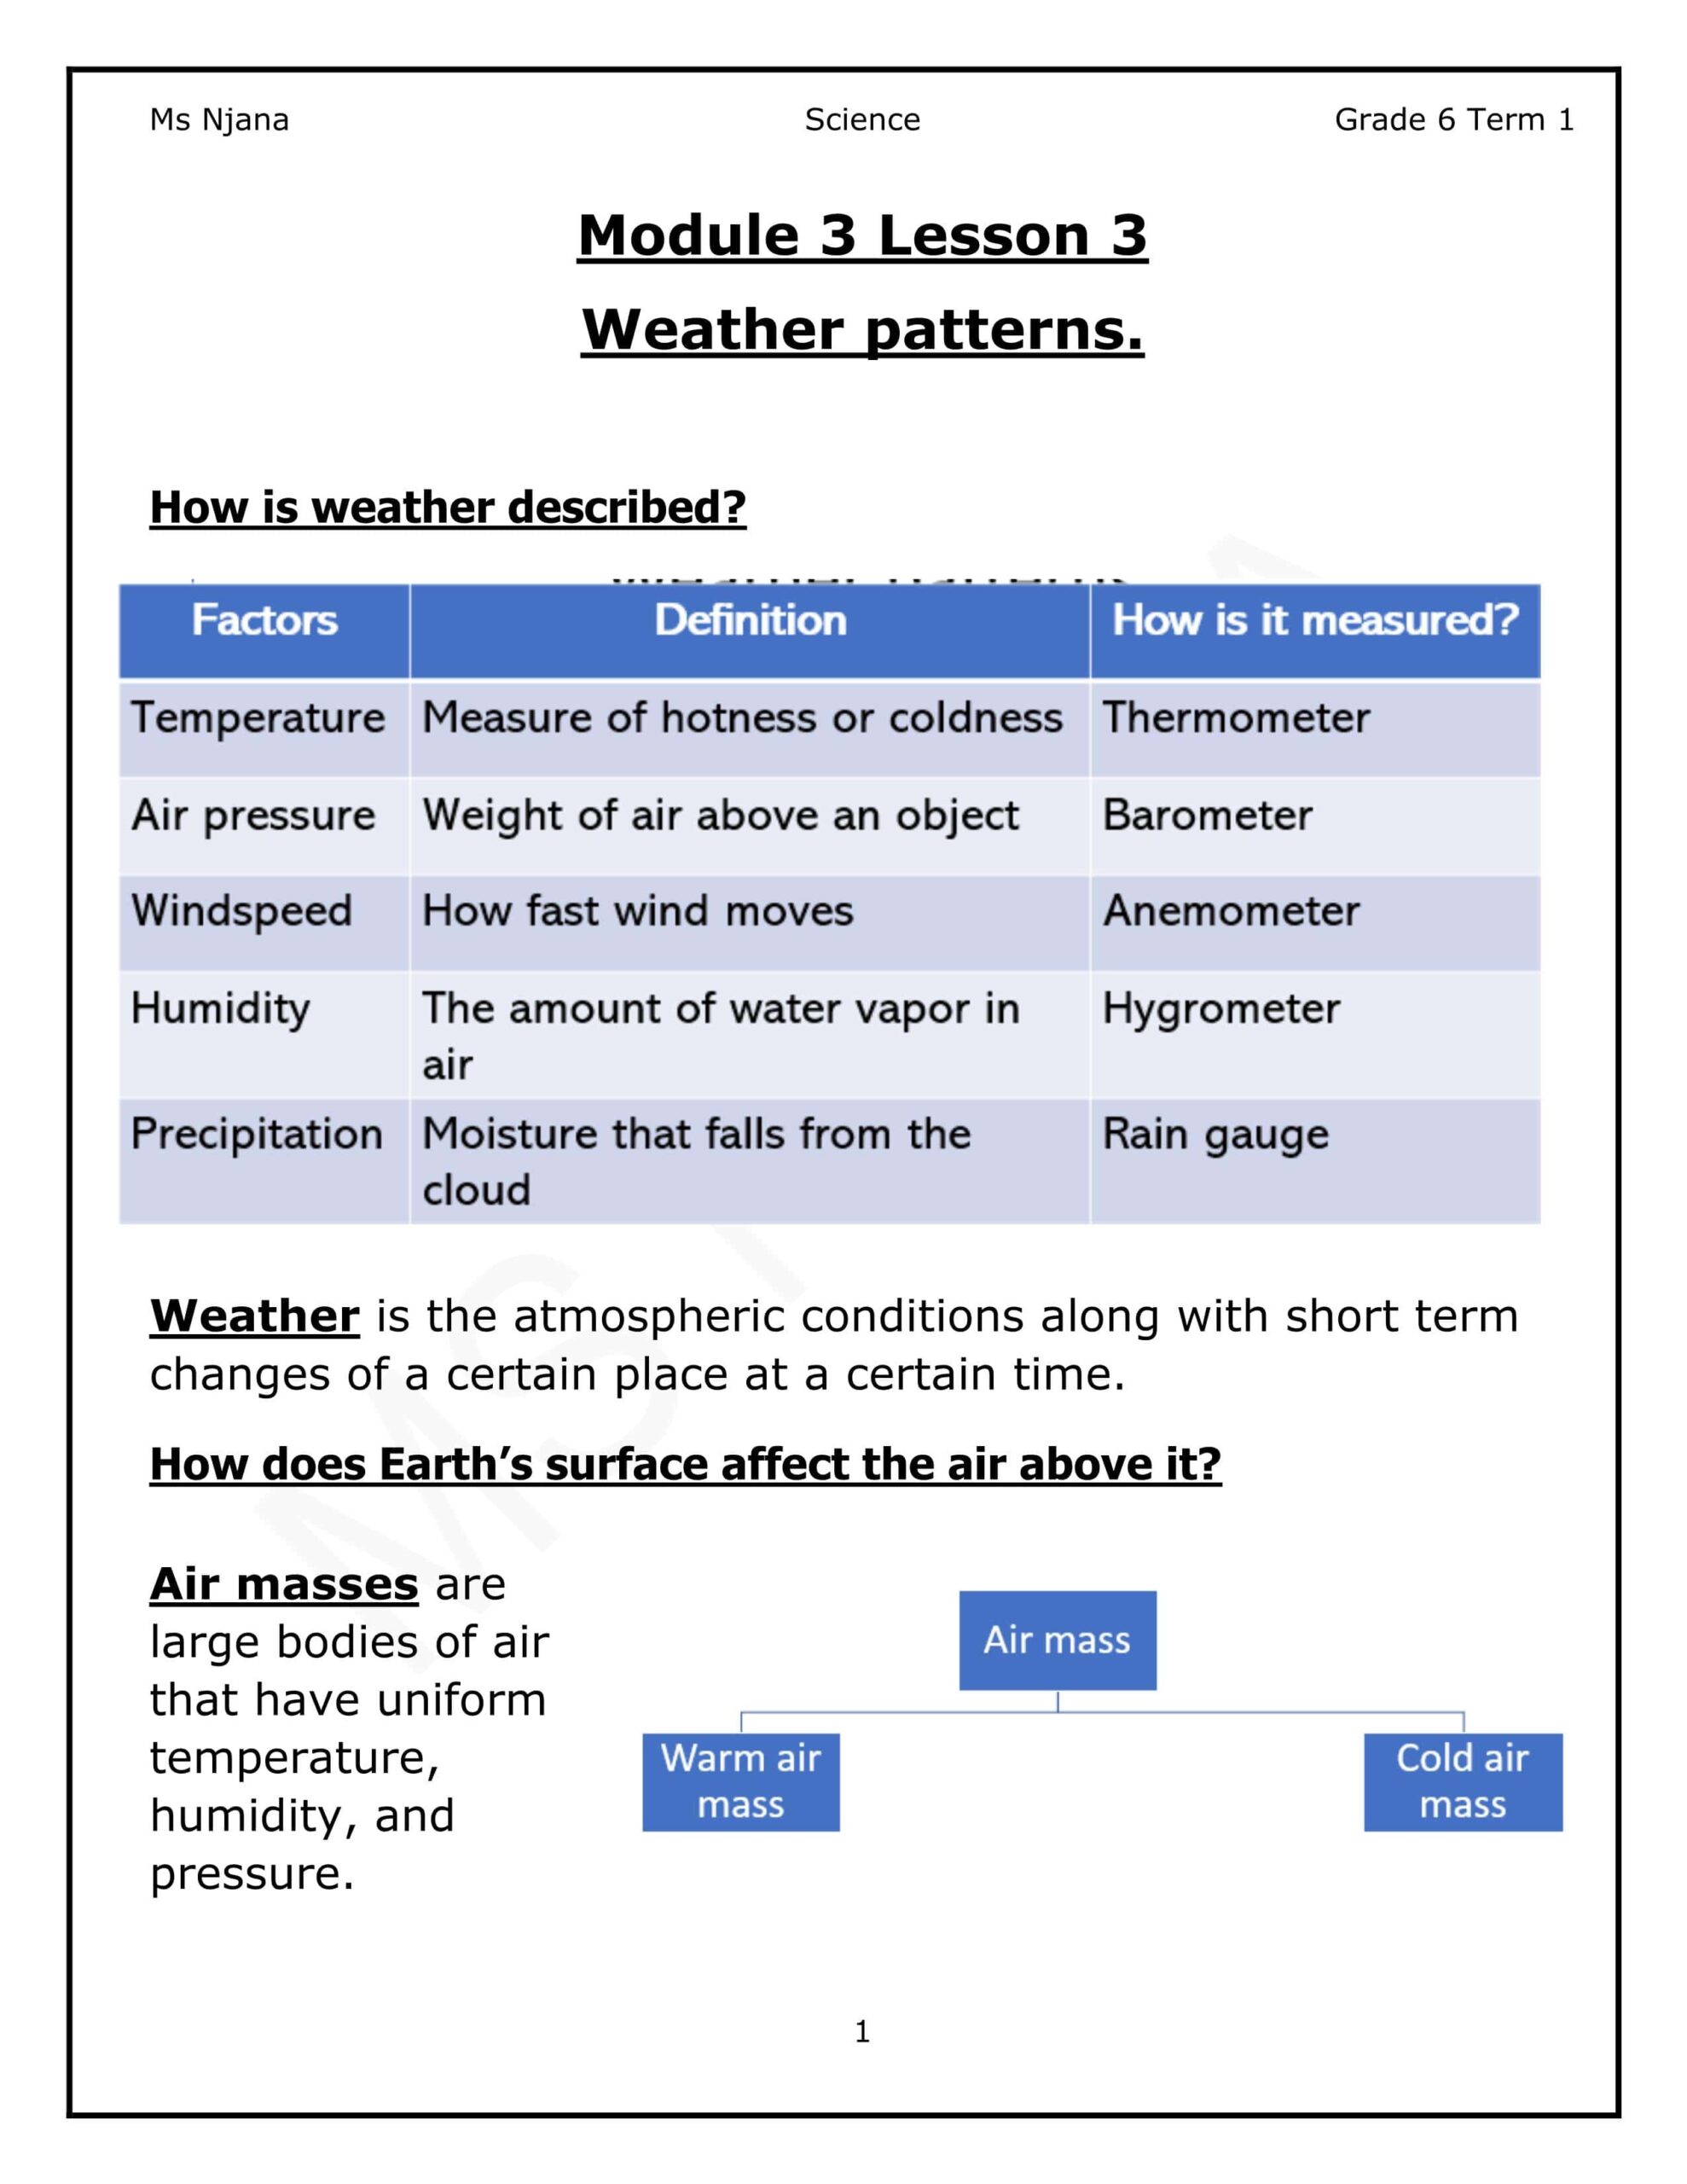 ملخص درس Weather patterns العلوم المتكاملة الصف السادس